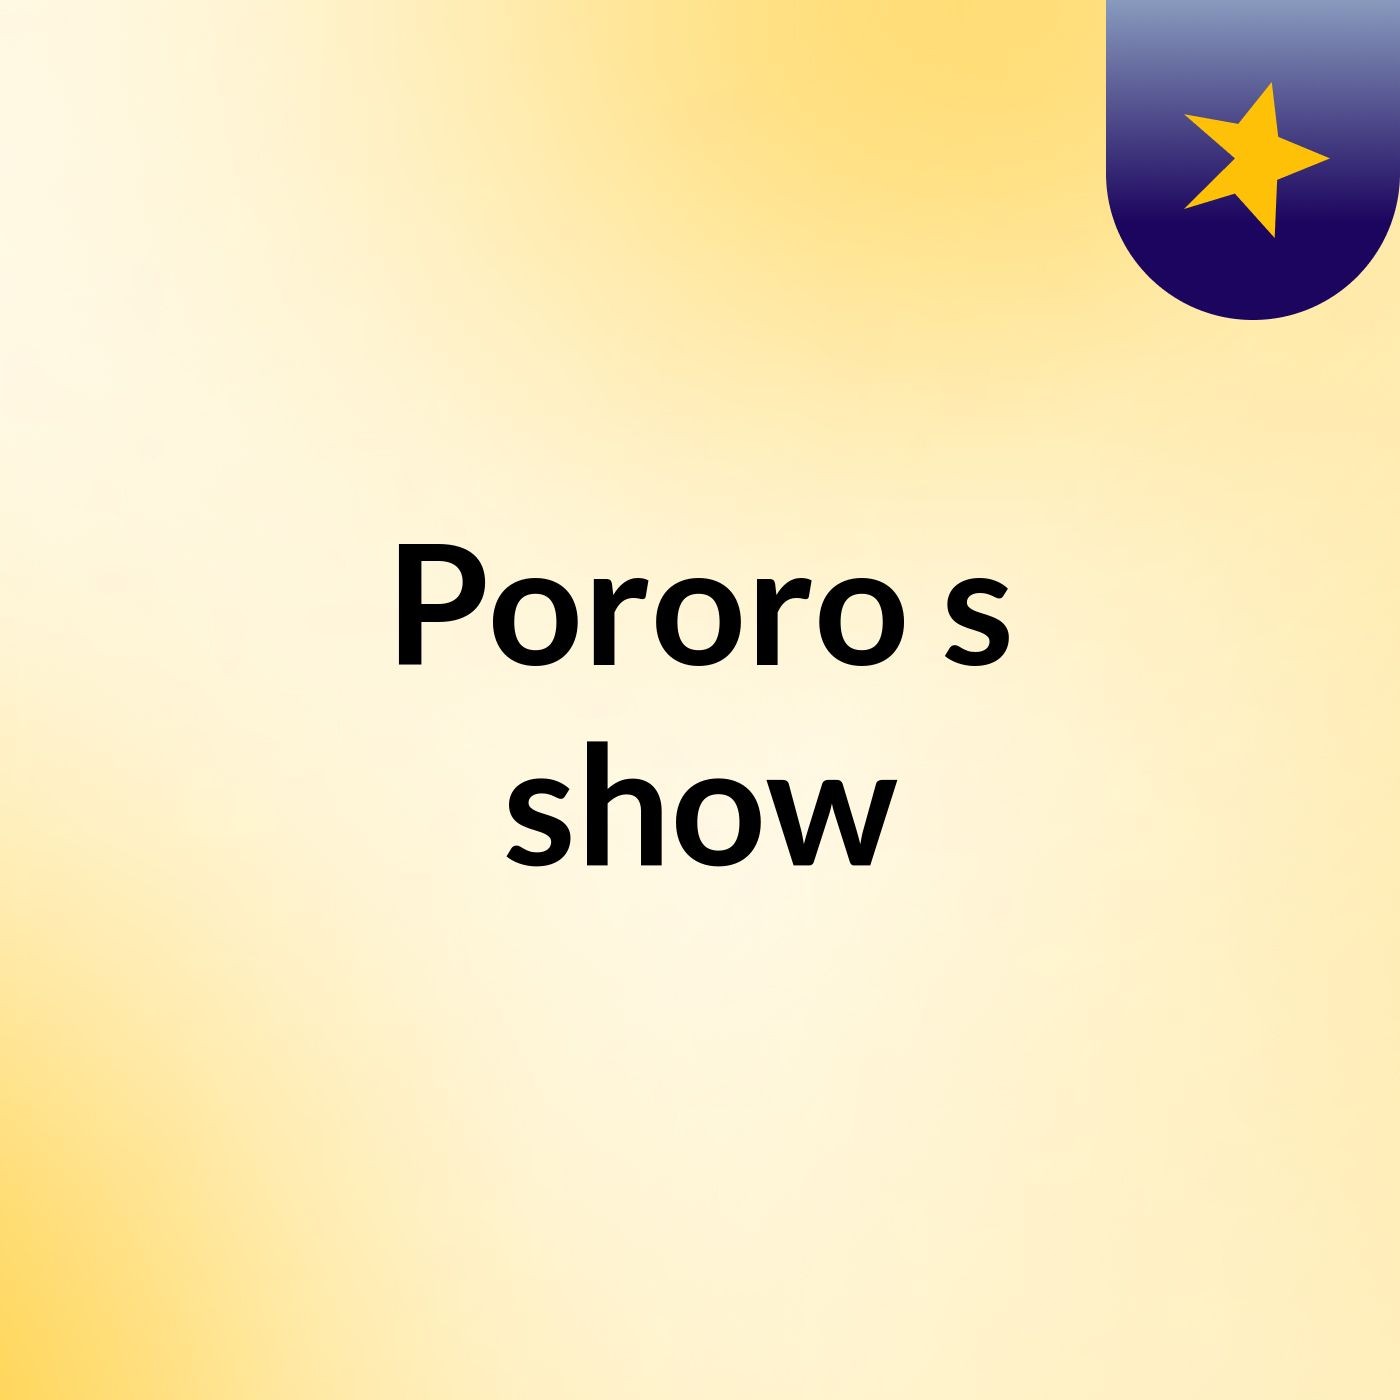 Pororo's show